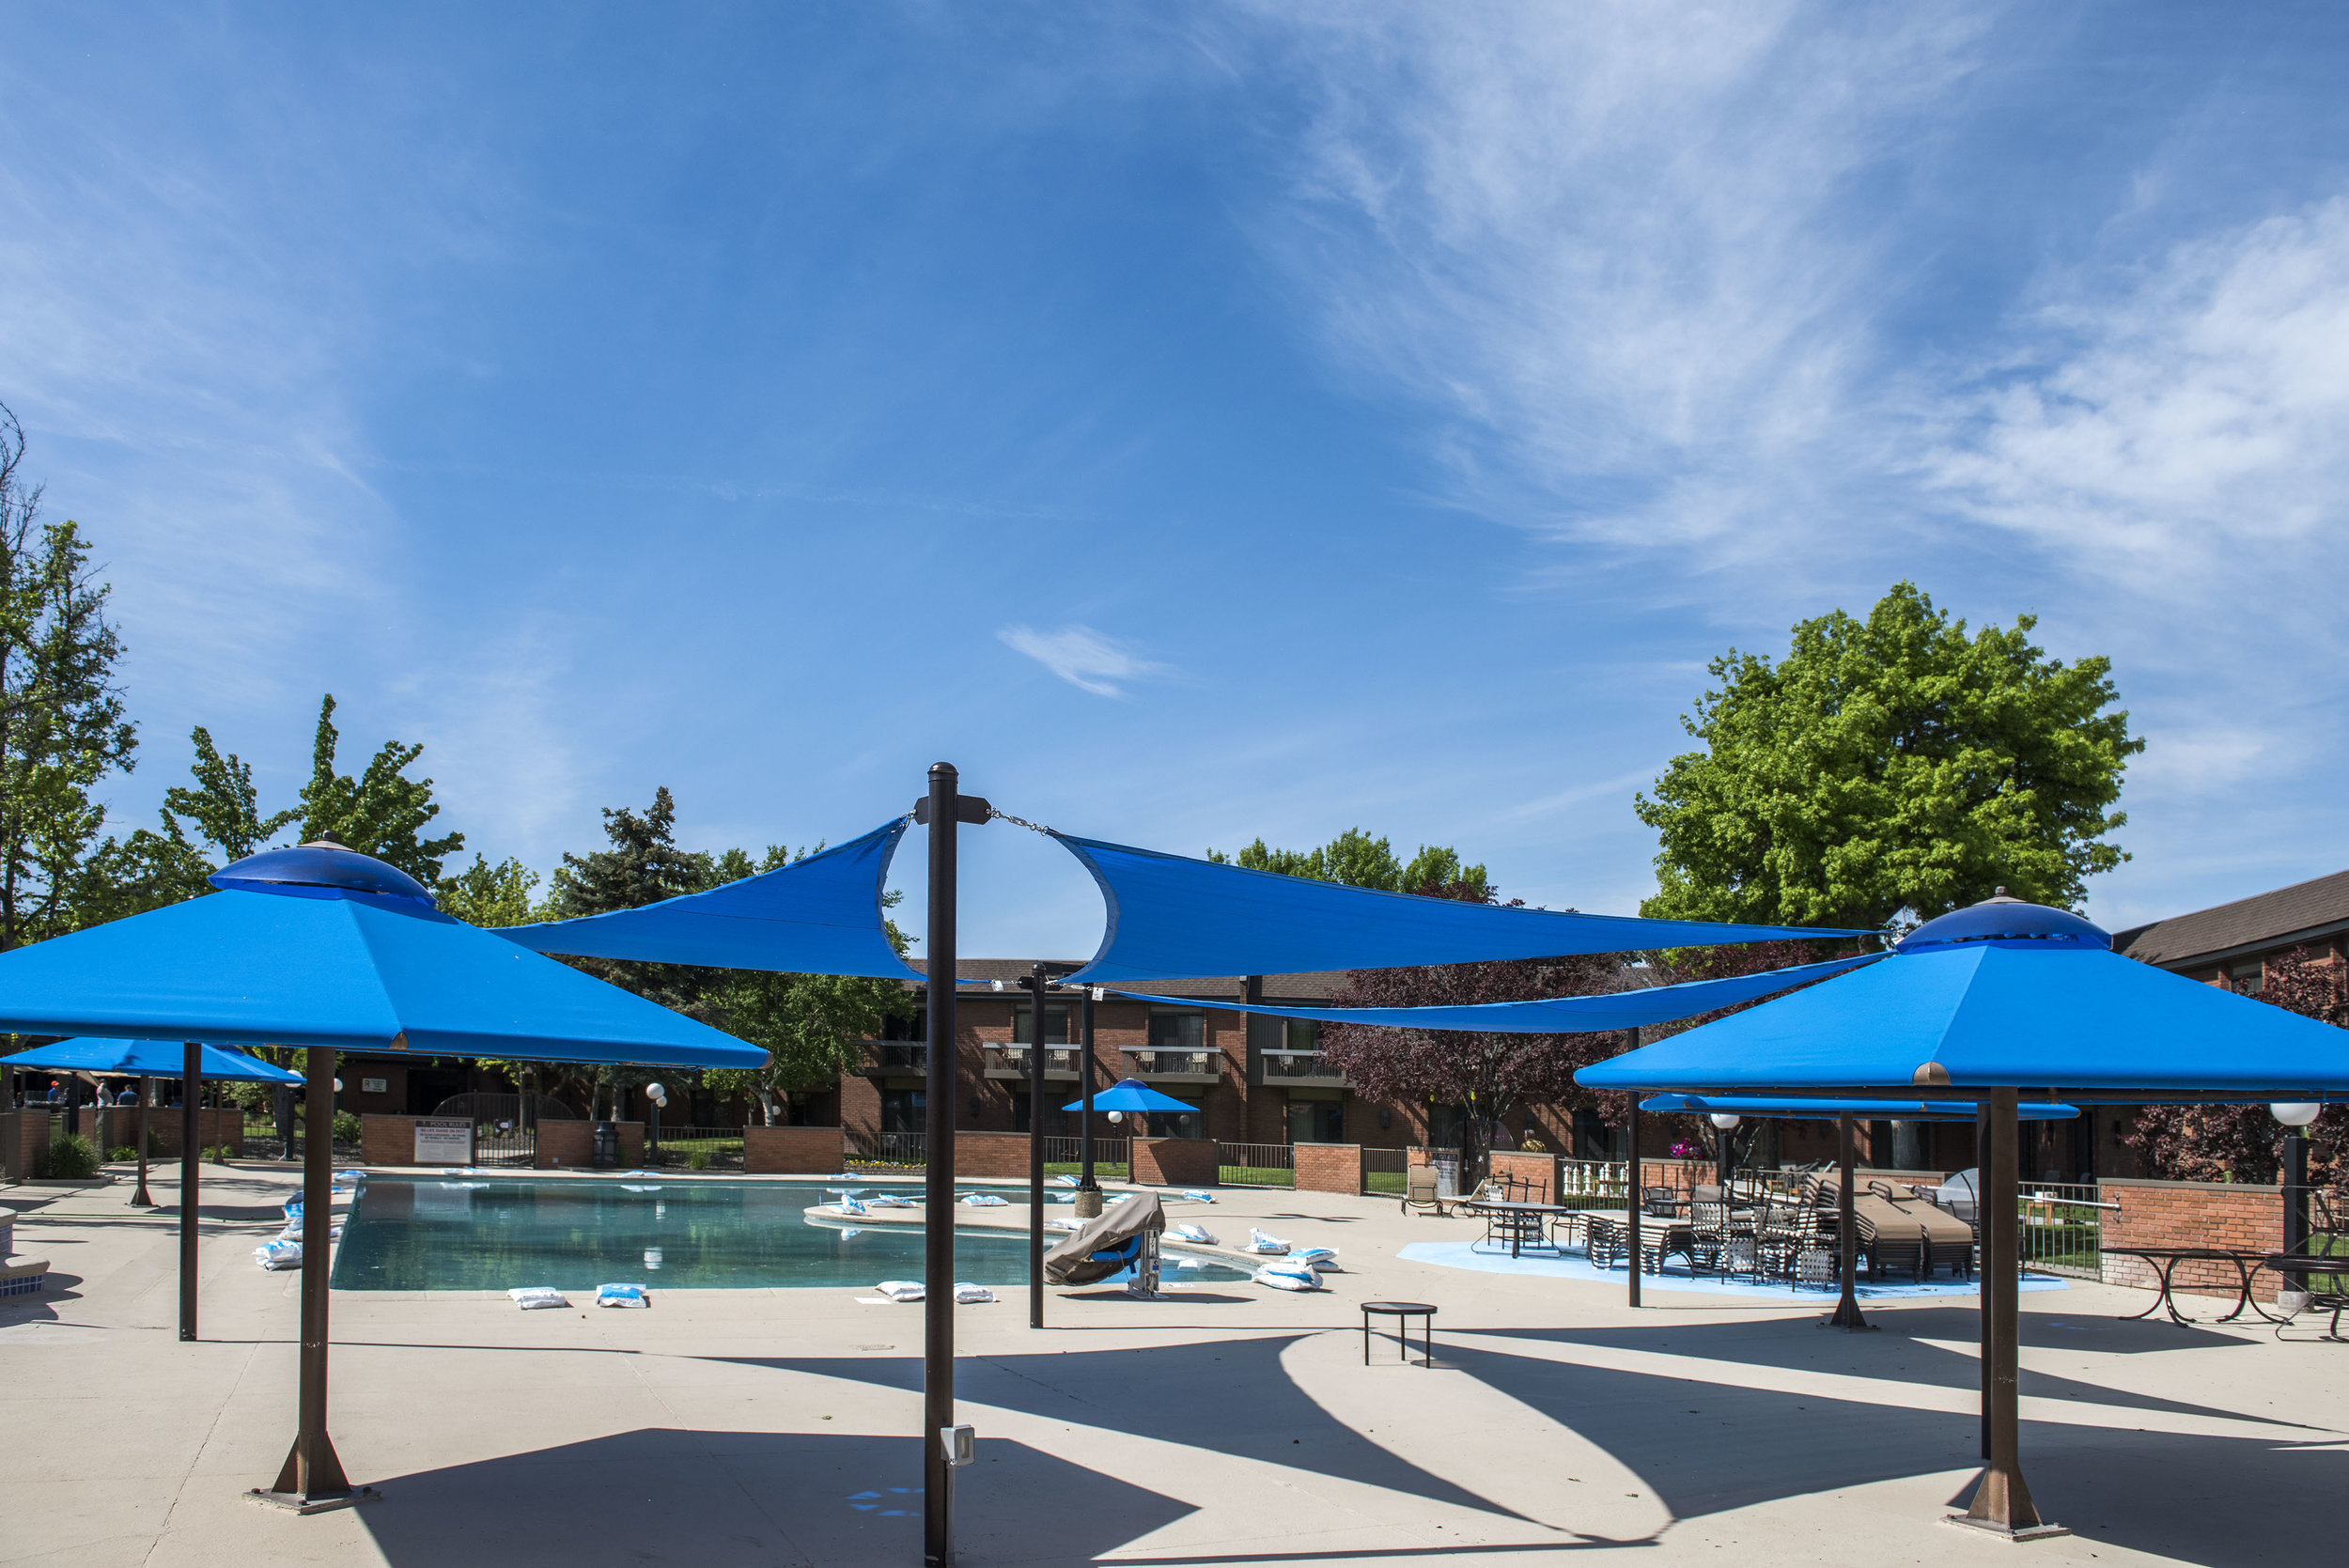 shade covers at pool